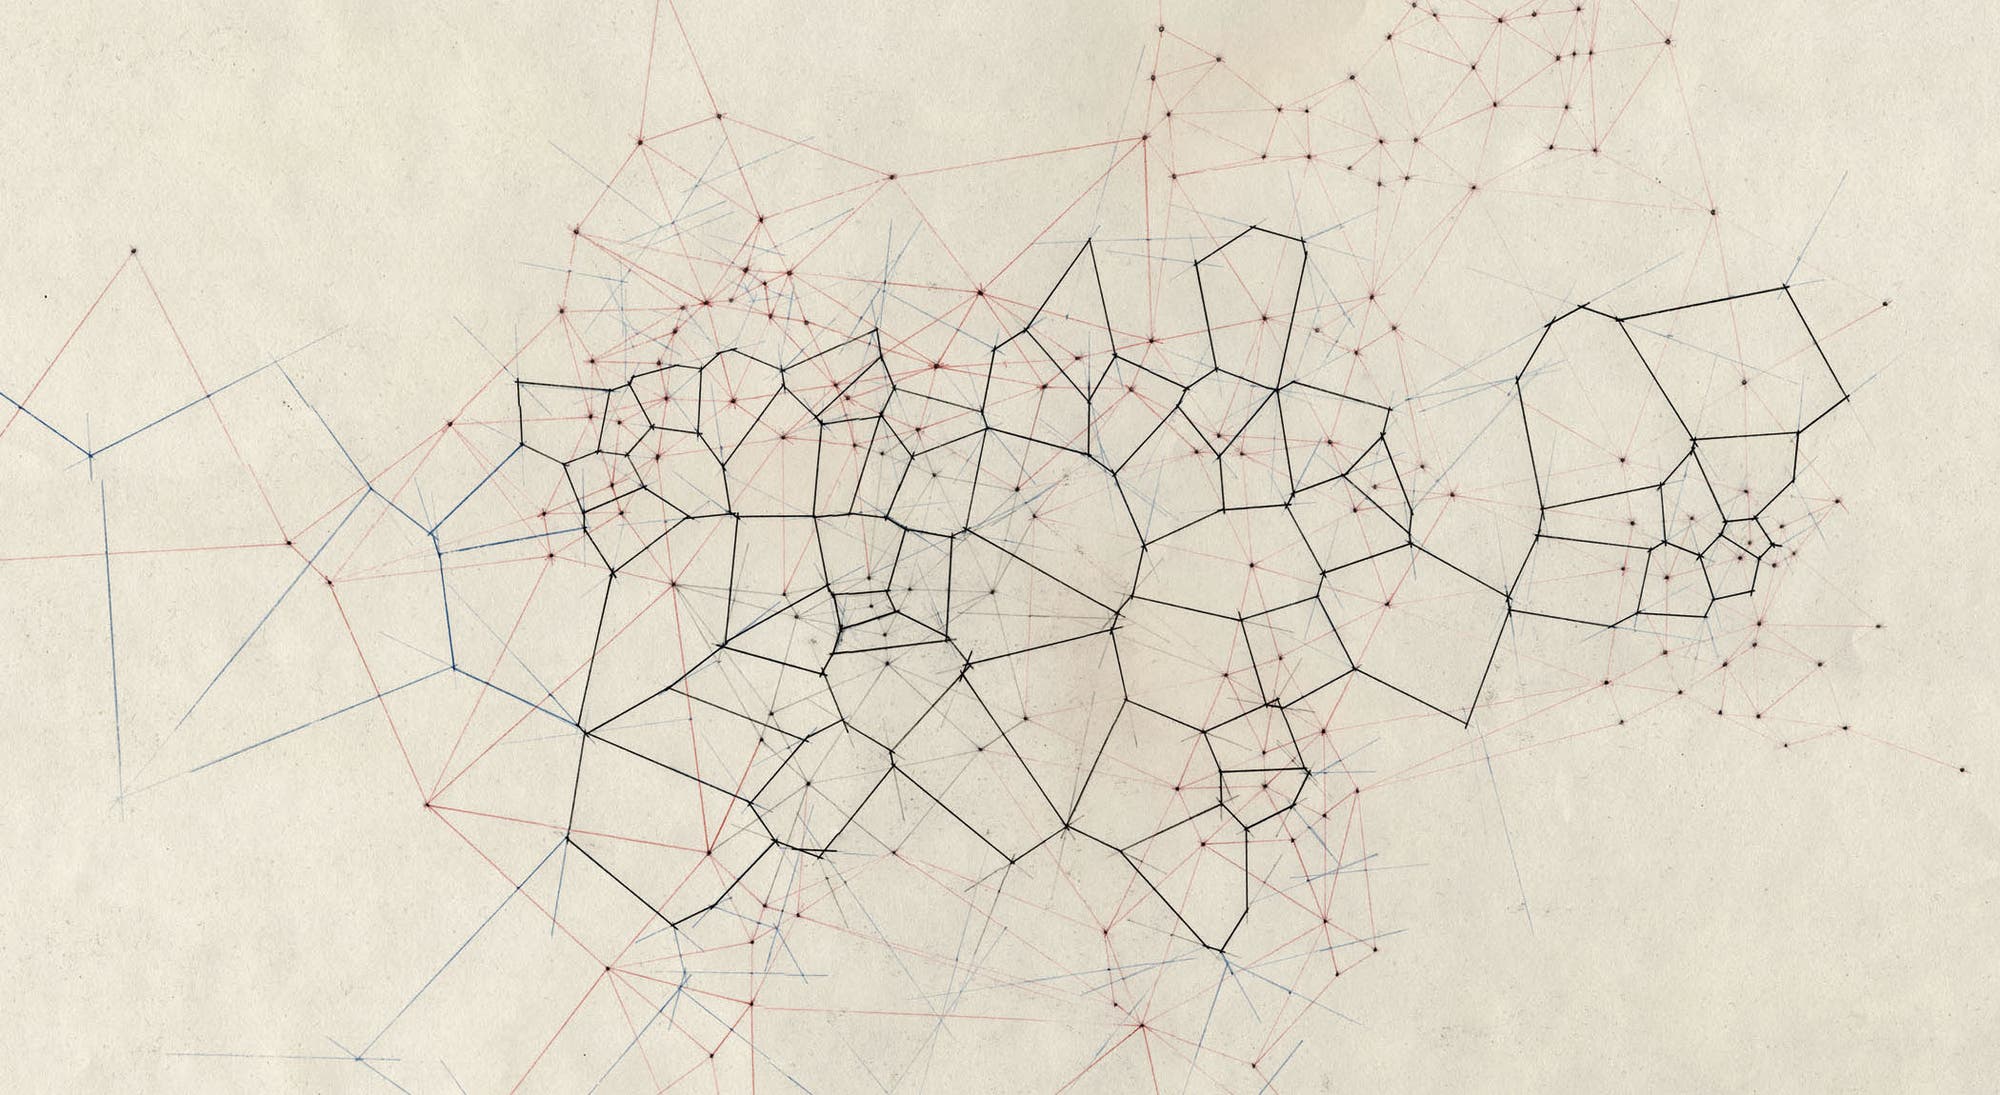 Ein Voronoi-Diagramm unterteilt eine Ebene mit Punkten (Zentren) in einzelne Flächen. Jede Fläche umfasst dabei die Punkte der Ebene, die einem bestimmten Zentrum am nächsten sind.